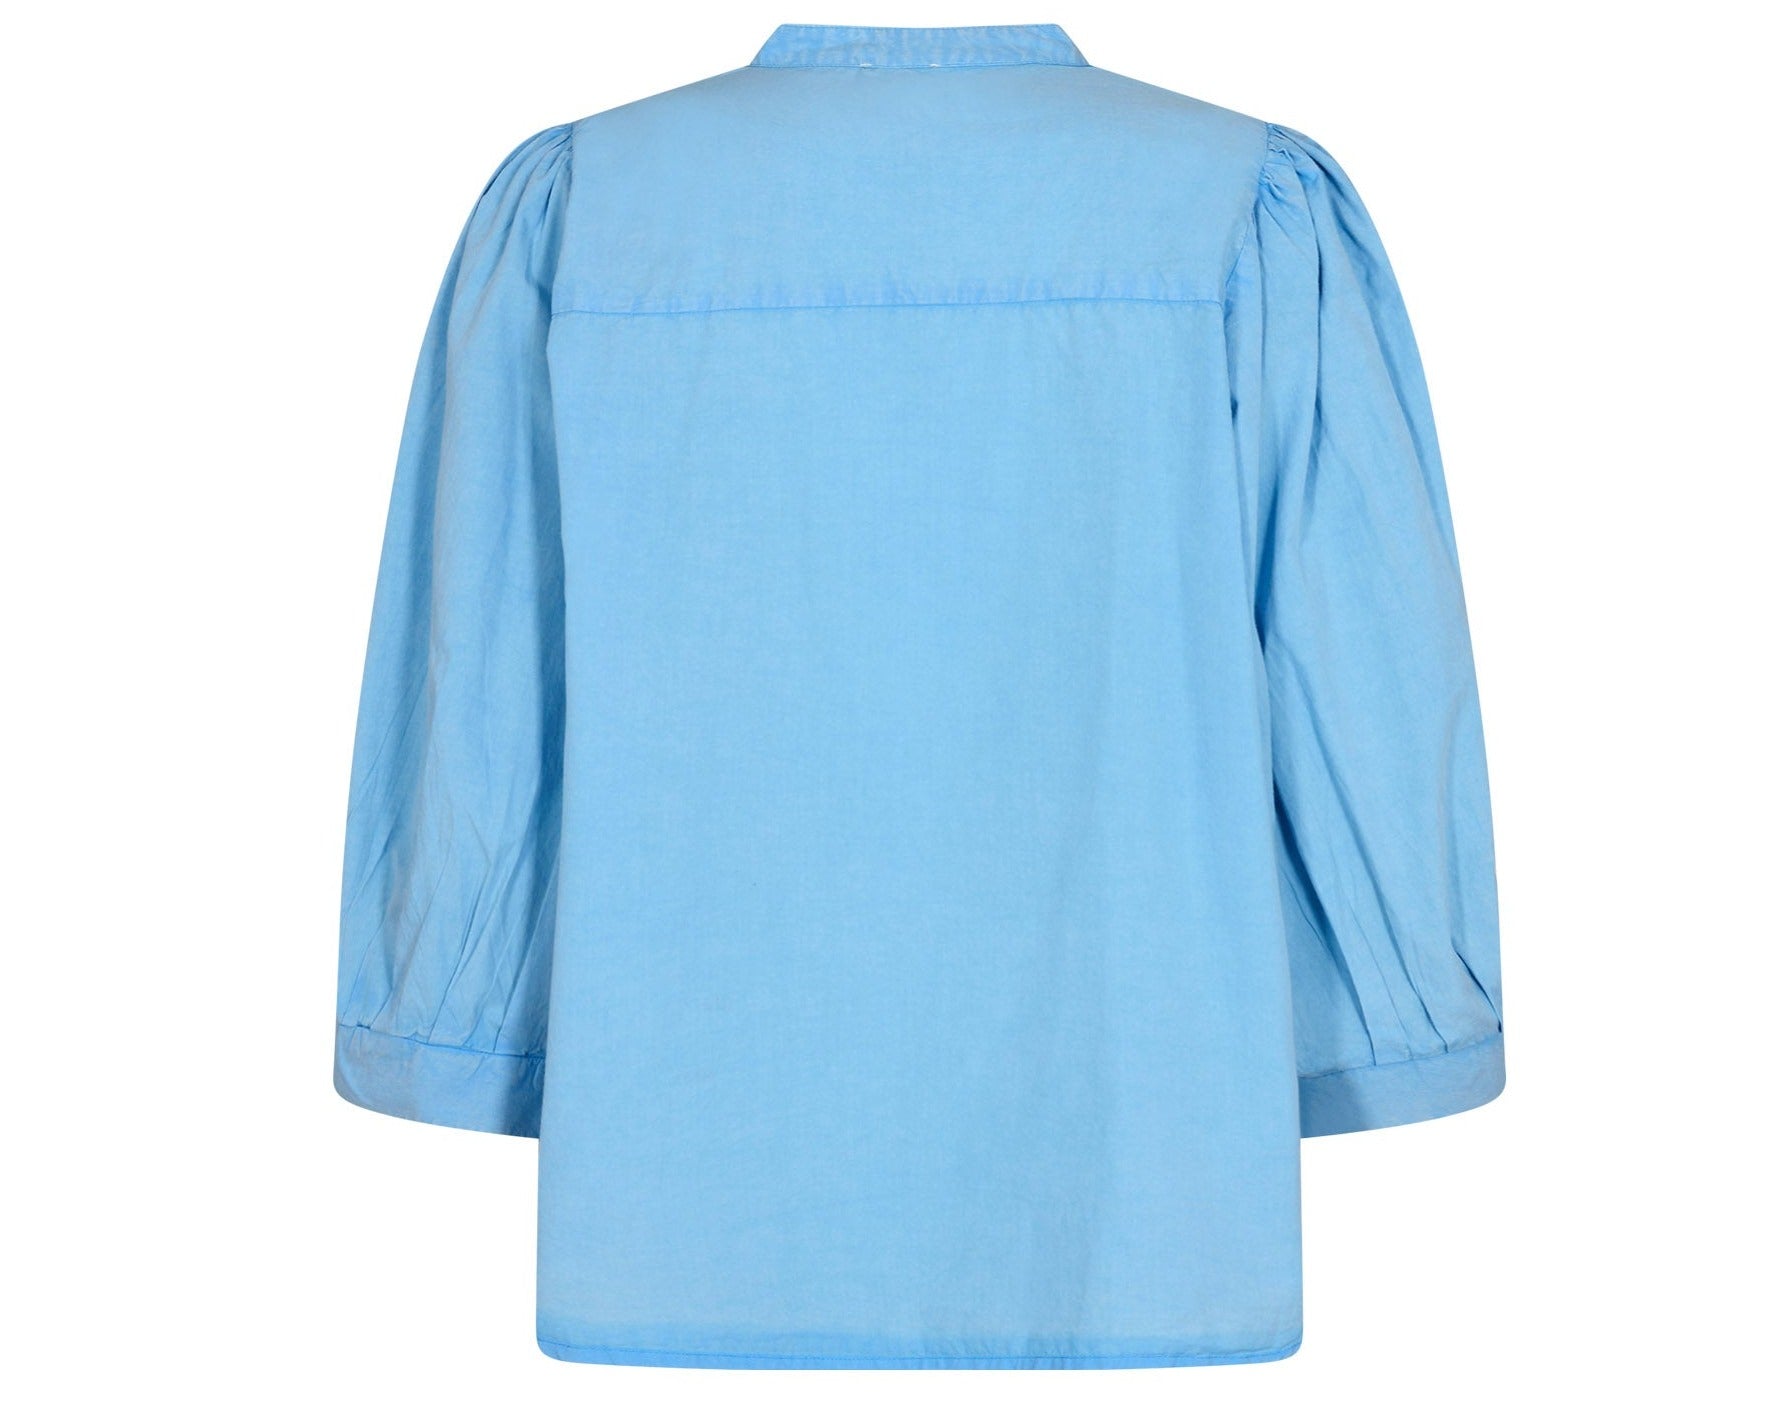 blå skjorte med 3/4 ærmer og flotte detaljer fra Gossia, bagfra